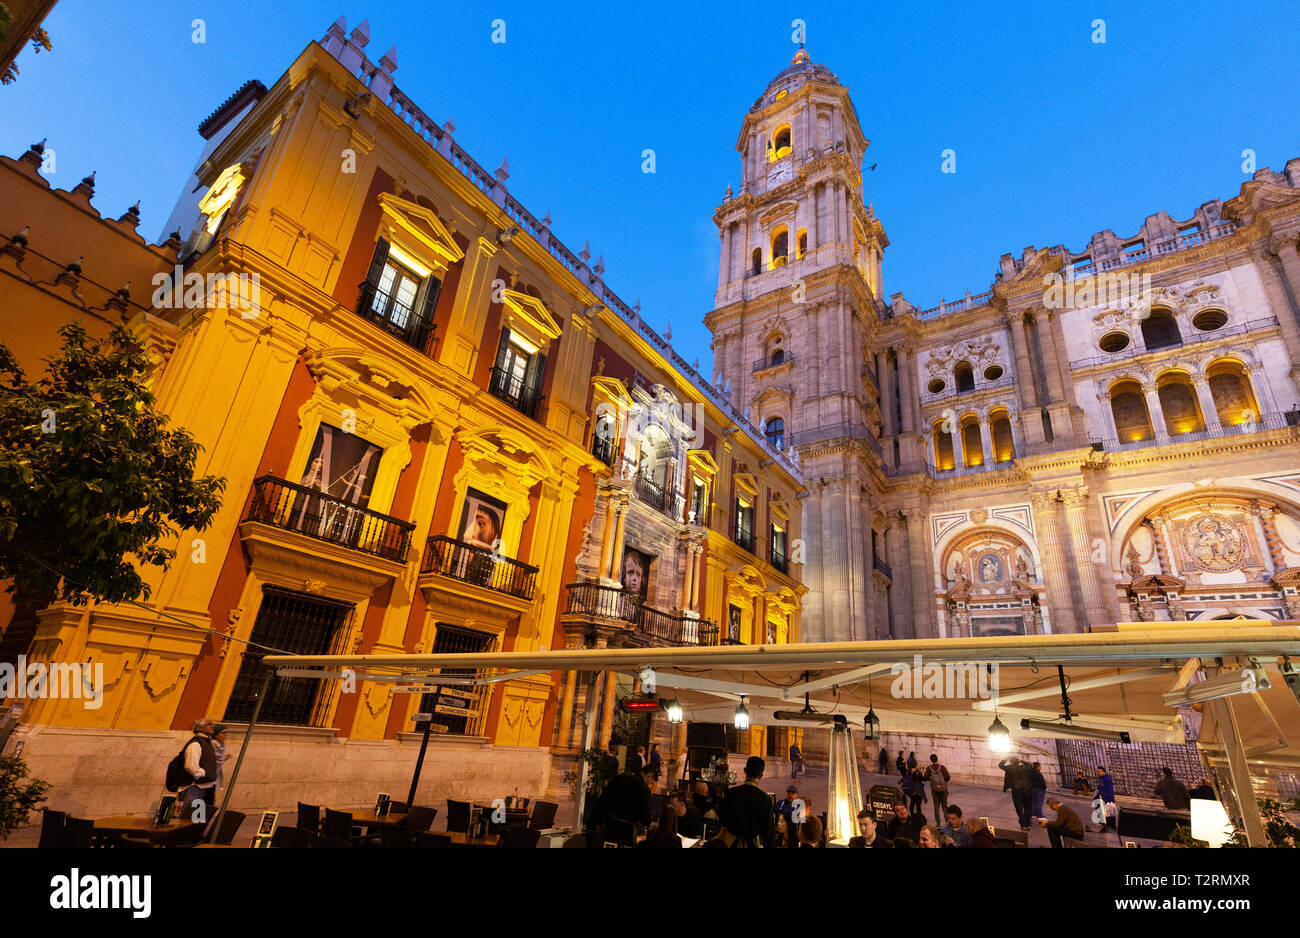 Die Kathedrale von Malaga und die Bishops Palace nachts beleuchtet, von der Plaza del Obispo, Malaga Altstadt, Andalusien Spanien gesehen Stockfoto